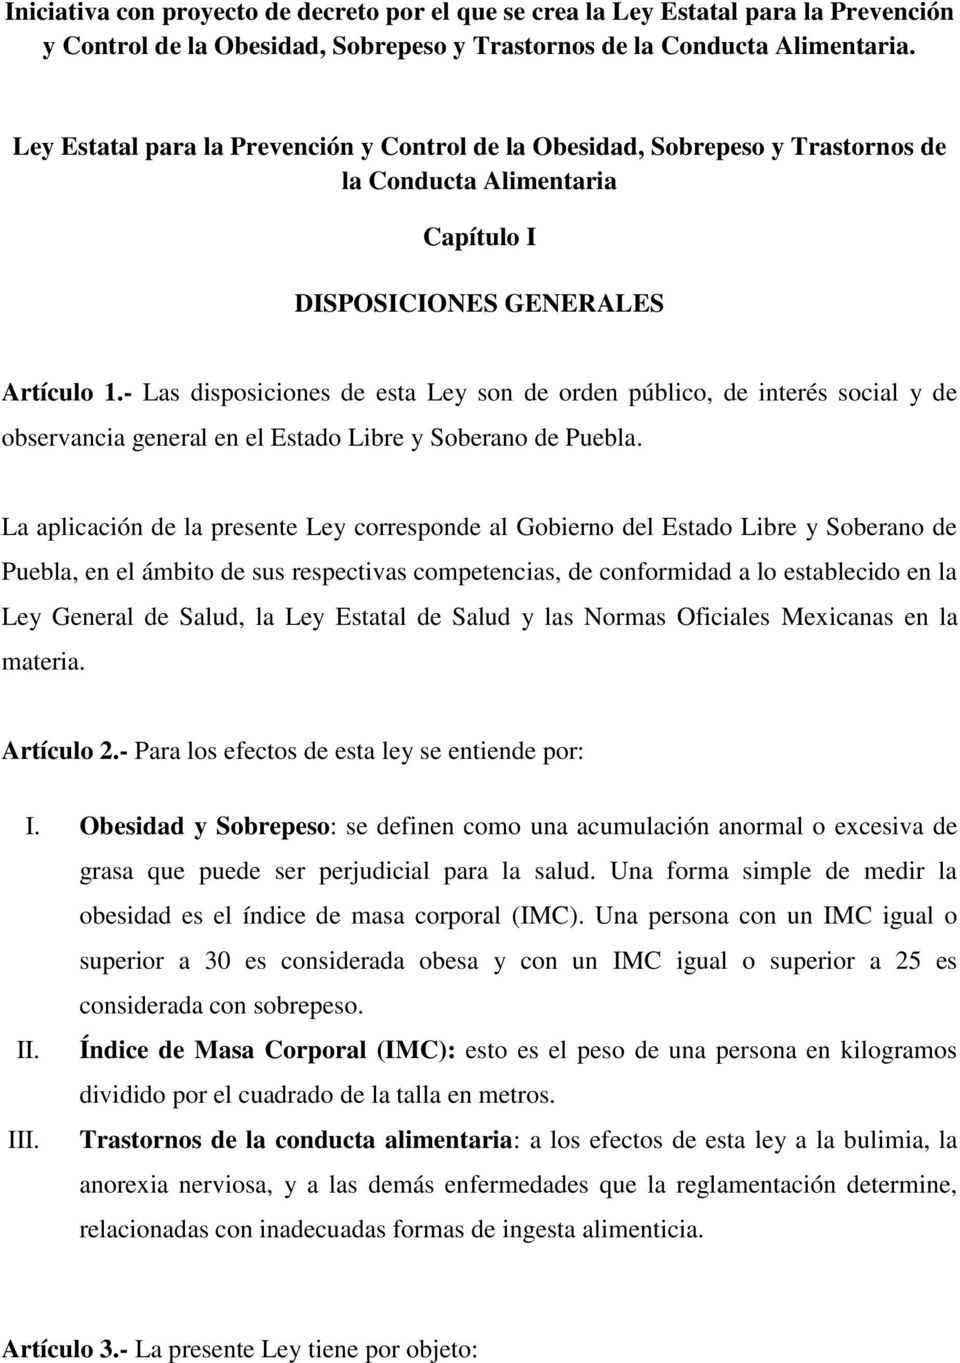 - Las disposiciones de esta Ley son de orden público, de interés social y de observancia general en el Estado Libre y Soberano de Puebla.